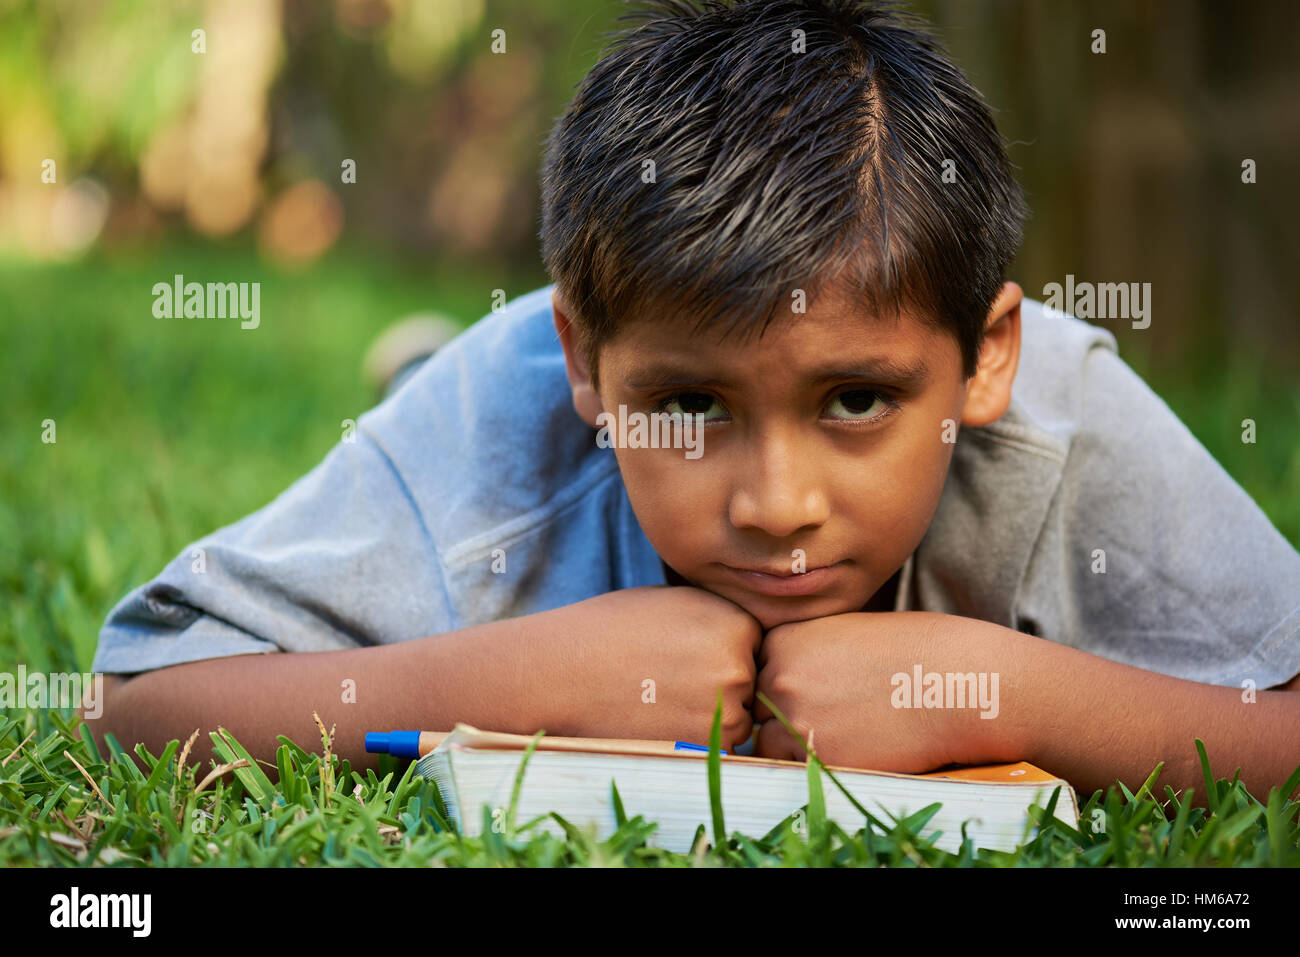 traurige junge mit Buch lag auf dem grünen Rasen Stockfoto